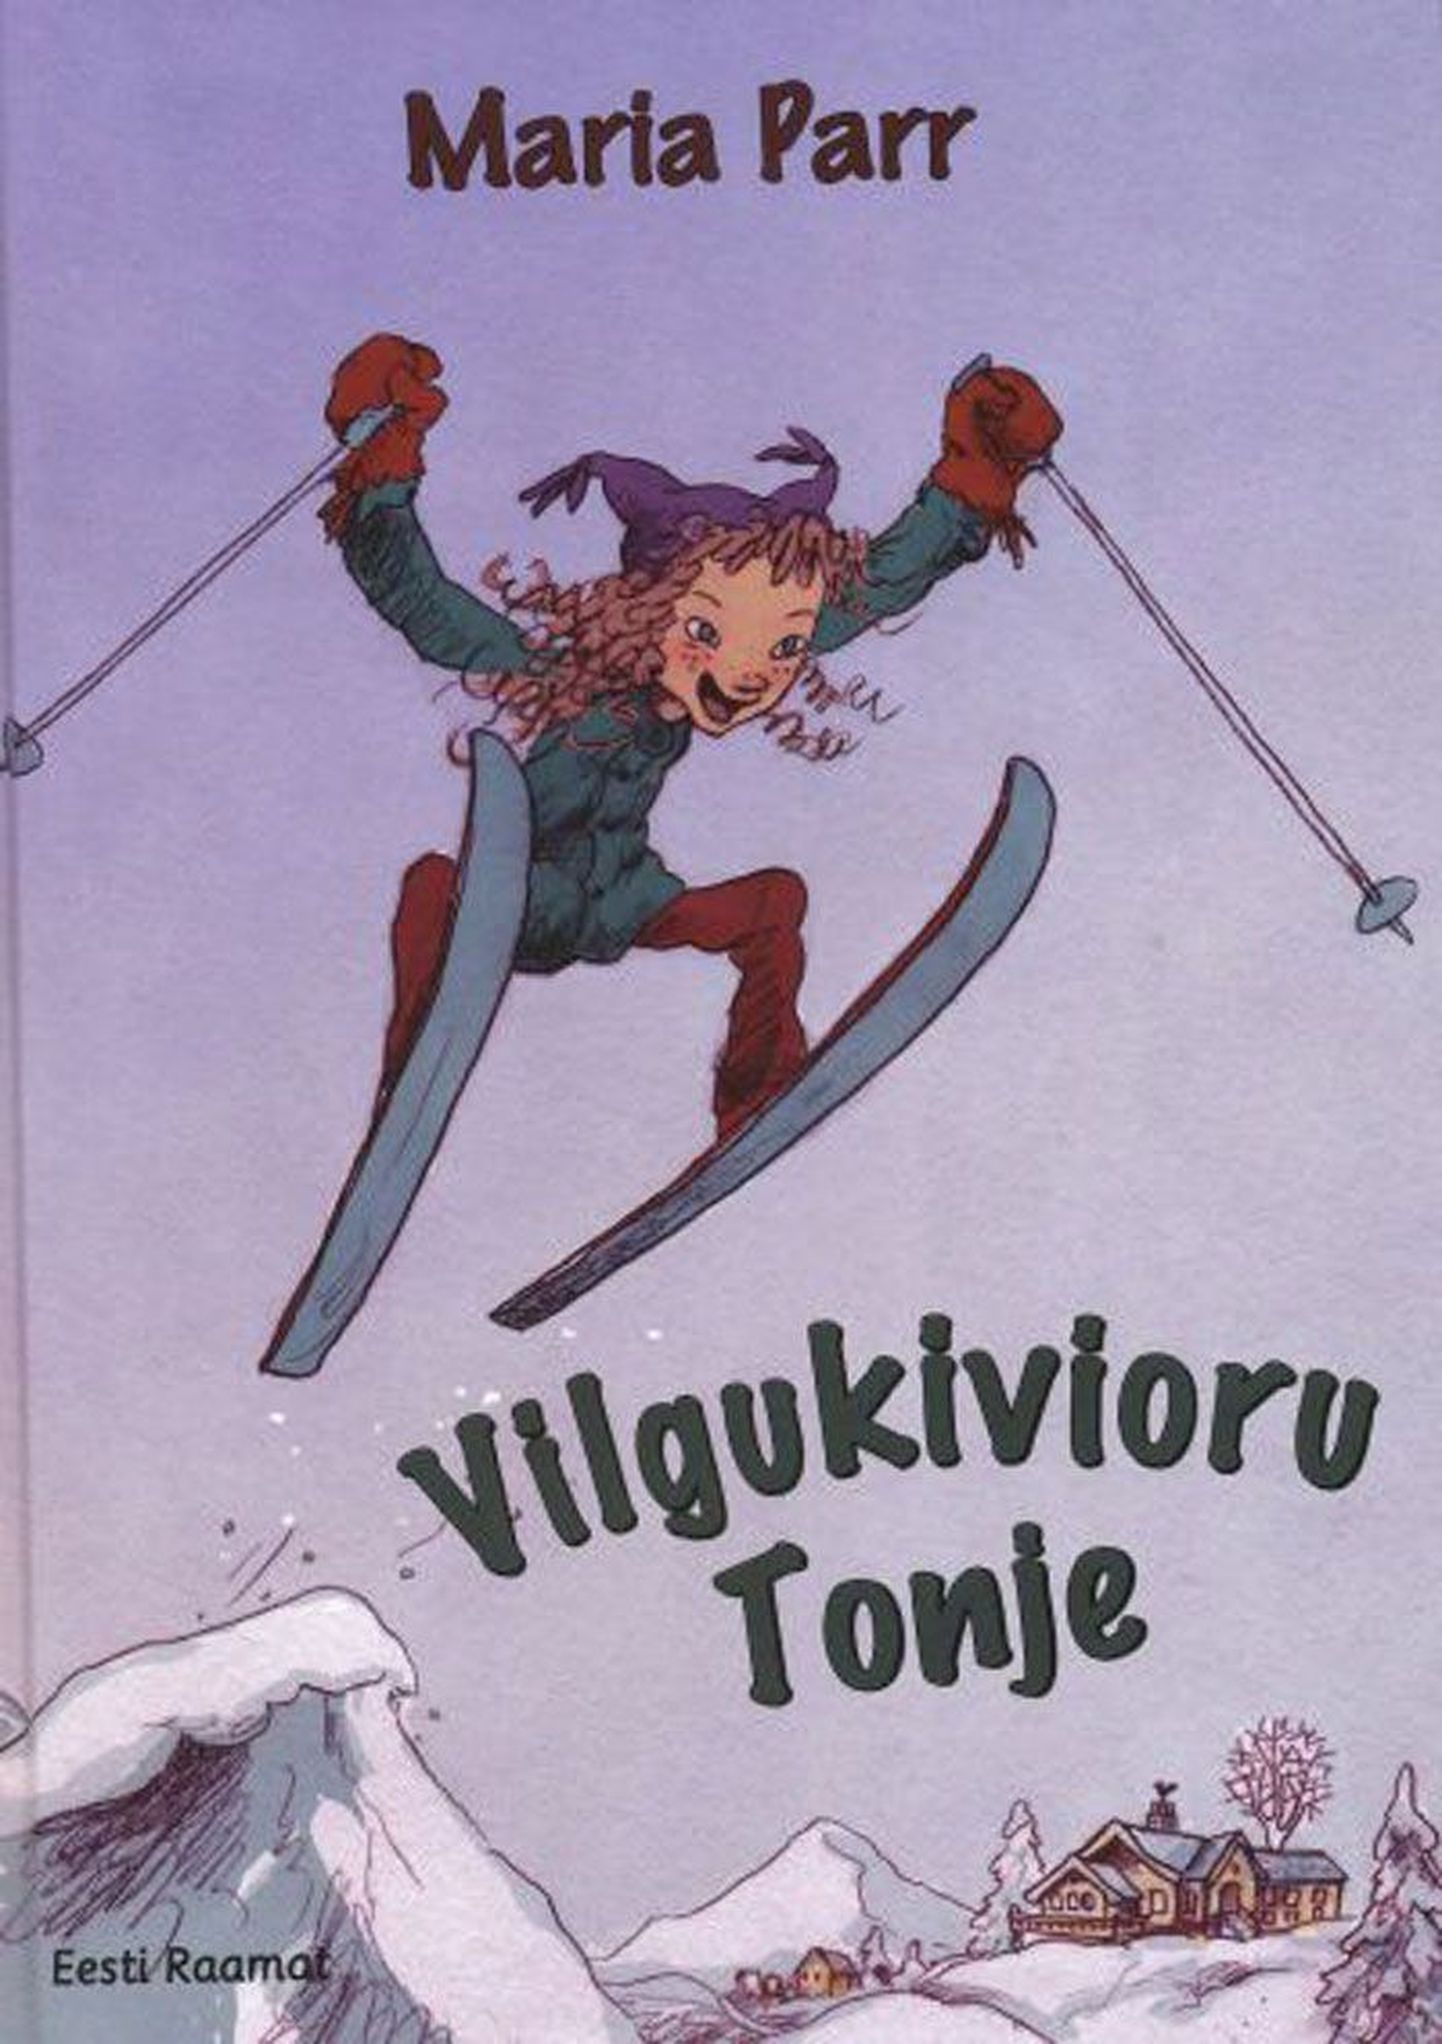 Raamat
Maria Parr 
«Vilgukivioru Tonje»
Norra keelest 
tõlkinud Riina Hanso
Pildid 
Åshild Irgens
Eesti Raamat, 2013